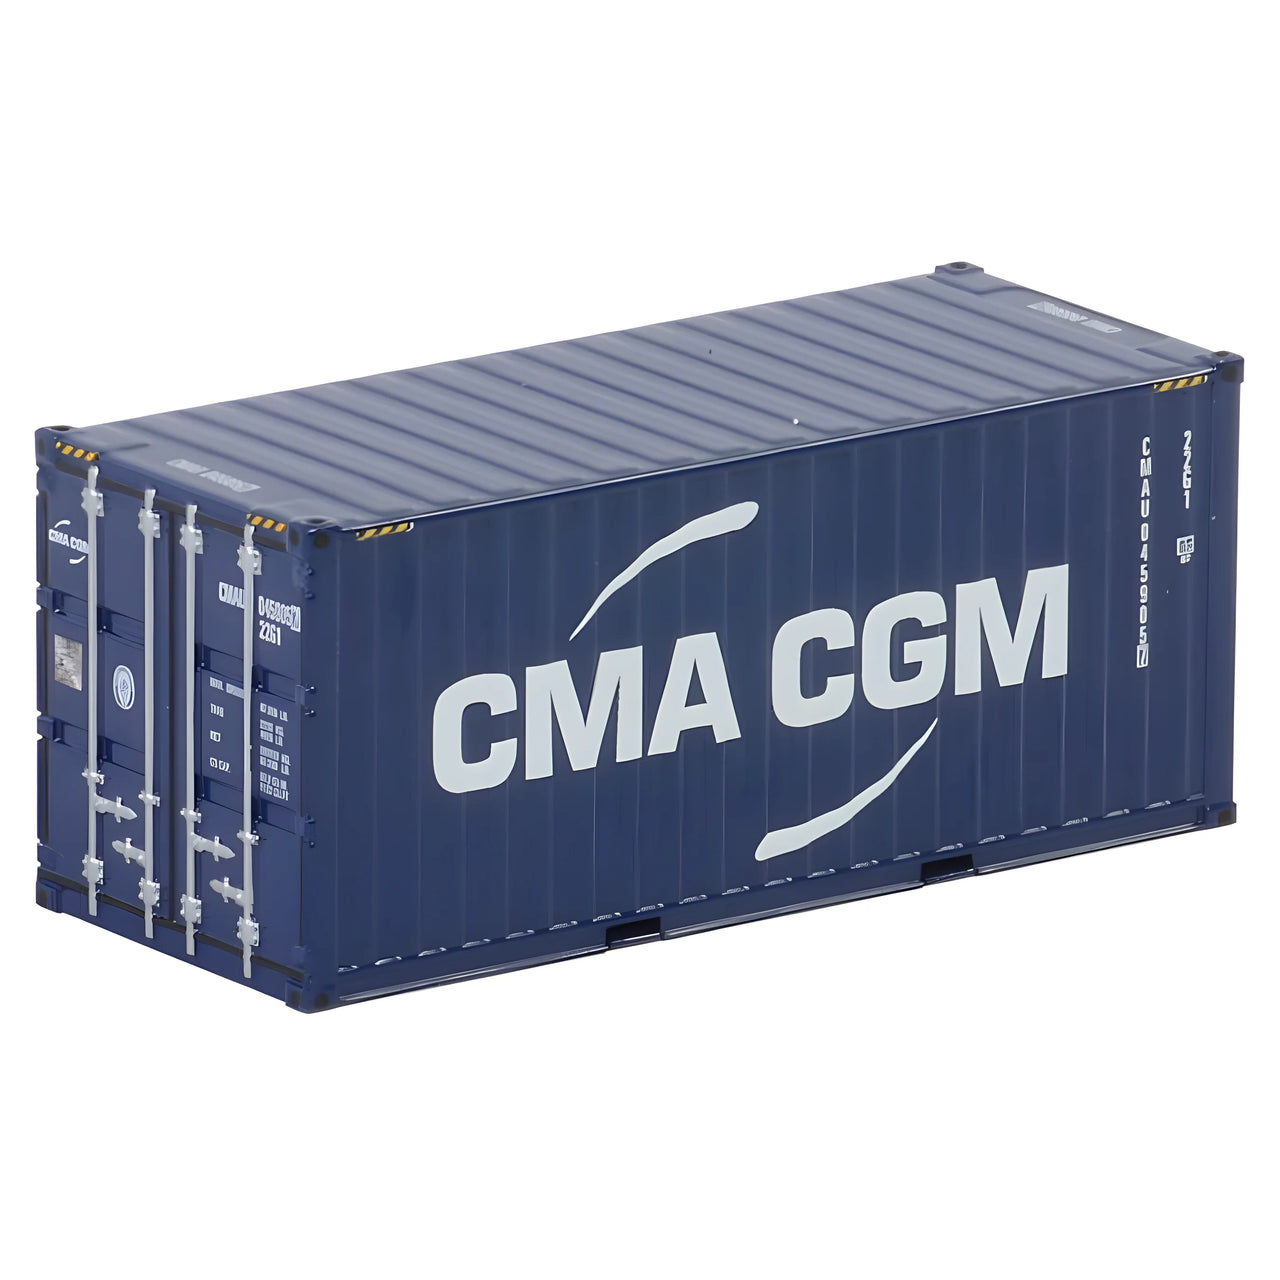 04-2083 Container CMA GGM 20' Scale 1:50